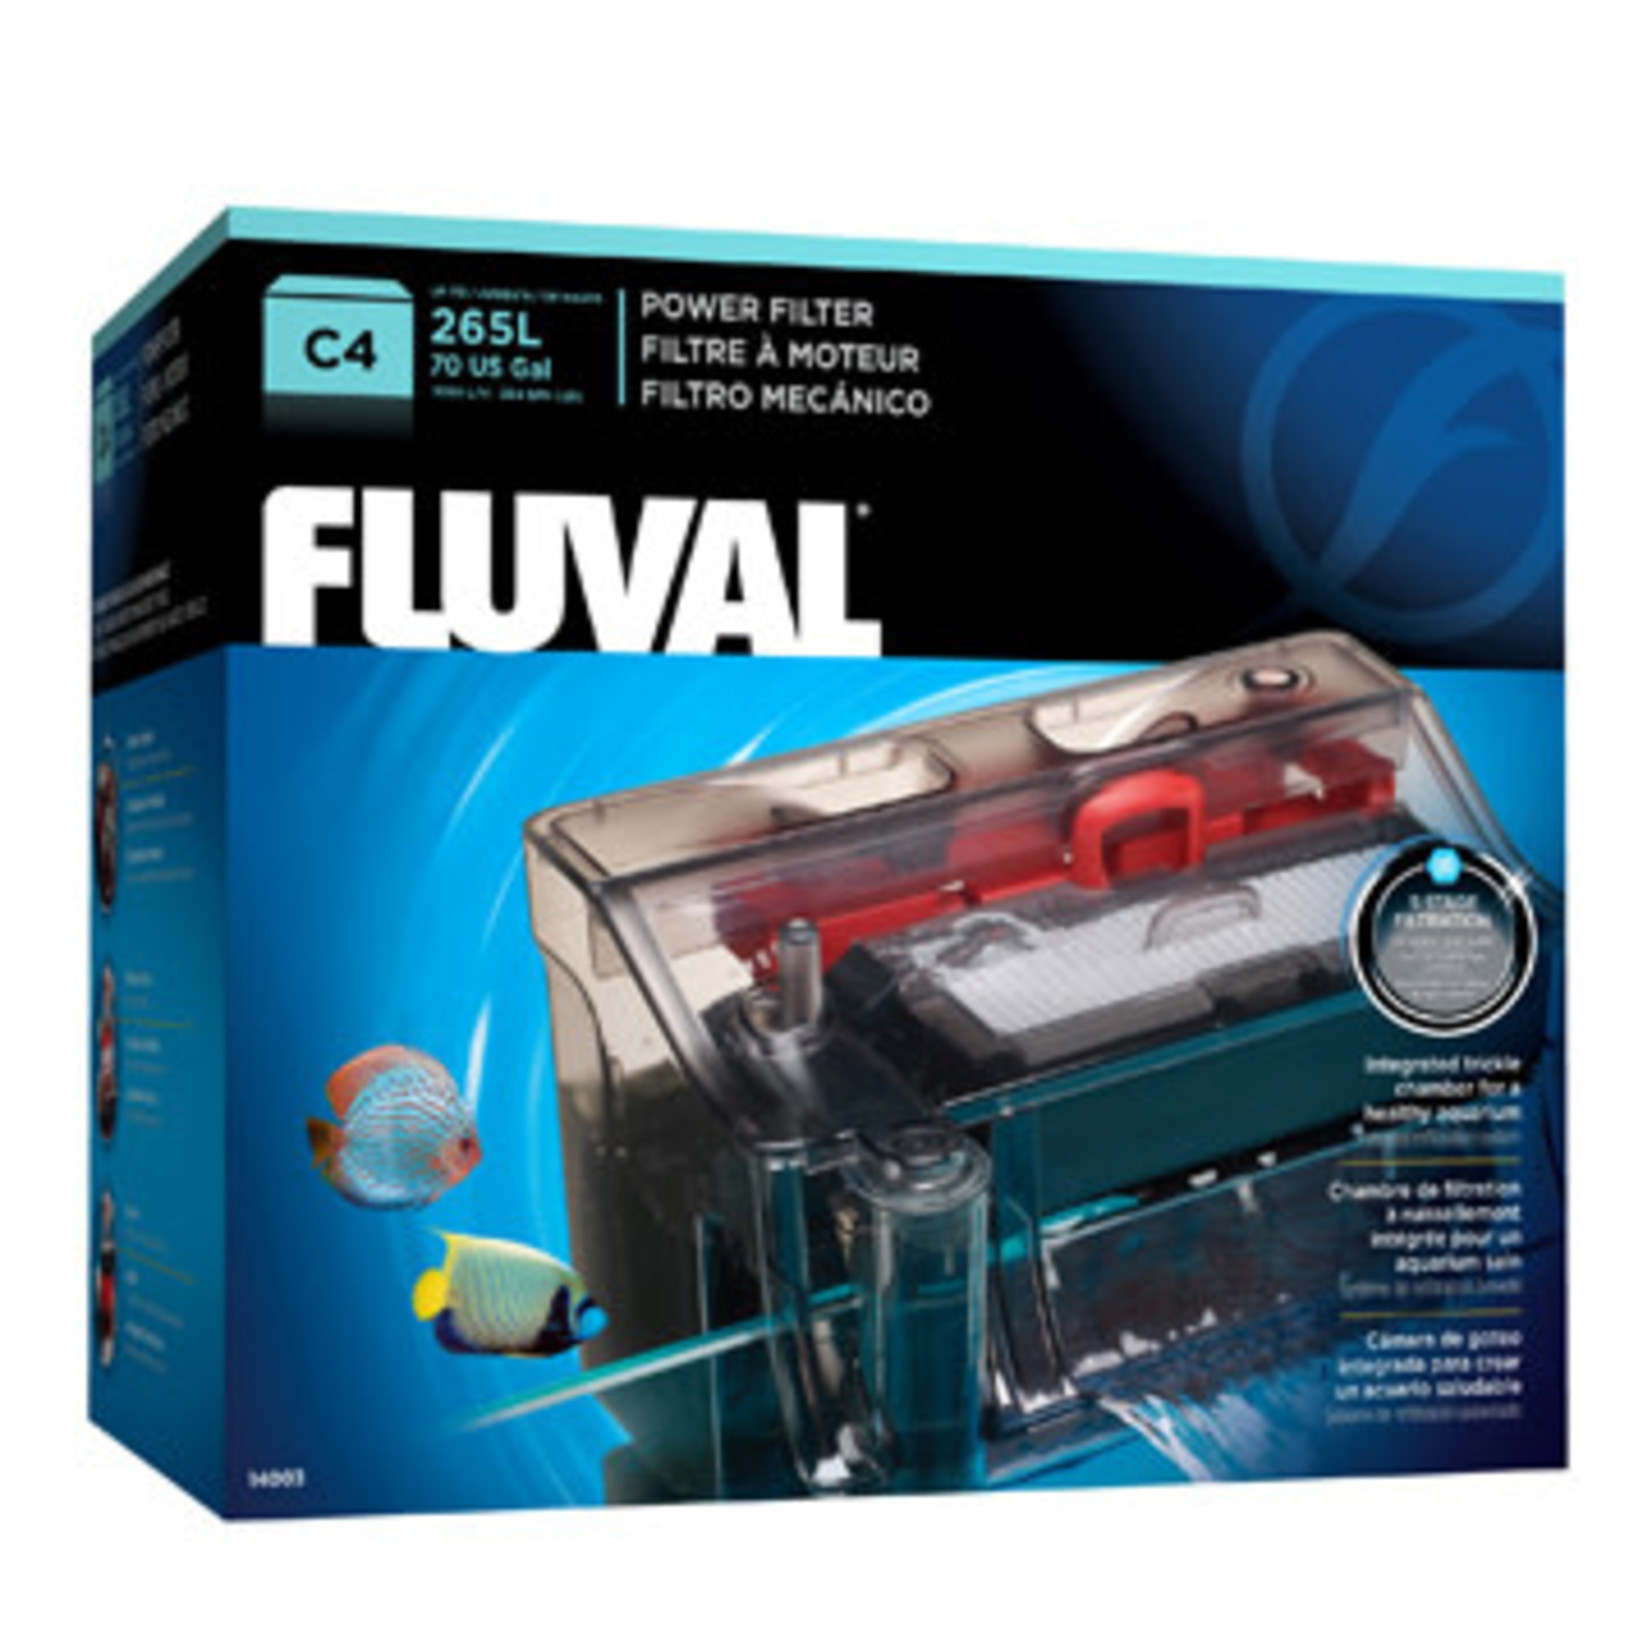 Fluval Fluval C4 Power Filter